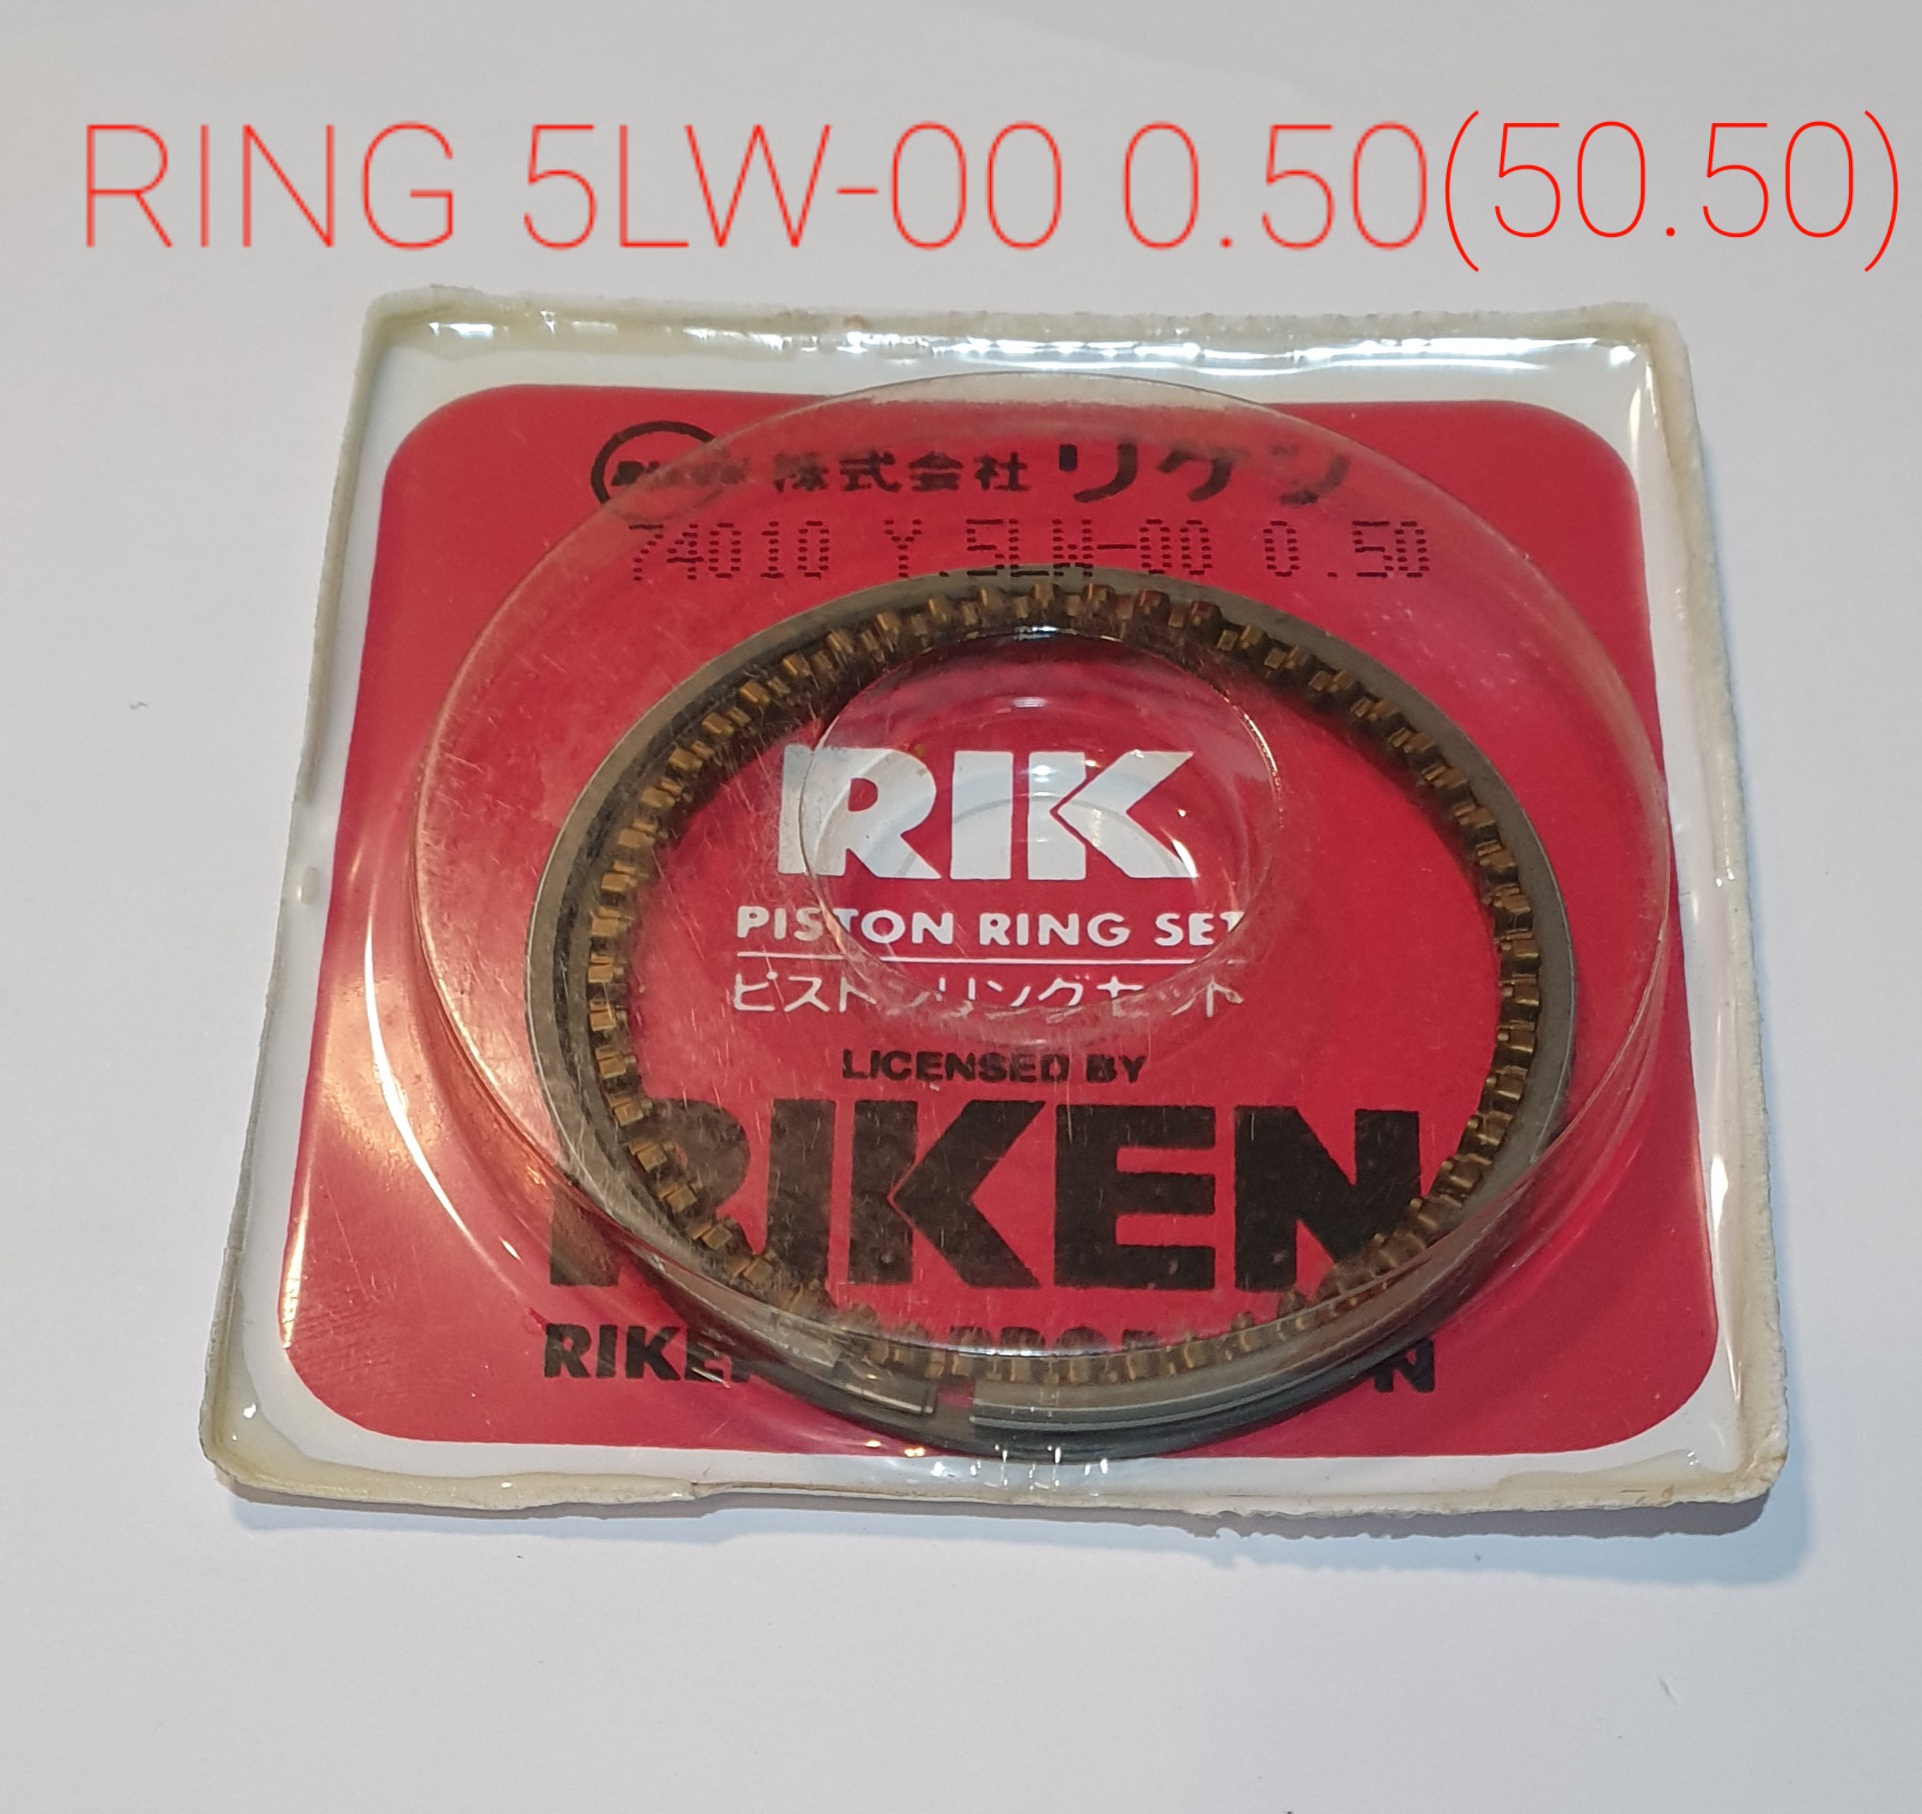 แหวนmio,ring 5lw,แหวนwave100,ring kfm,แหวน wave110-i kwb,ring kwb,ring kvy,แหวน i con